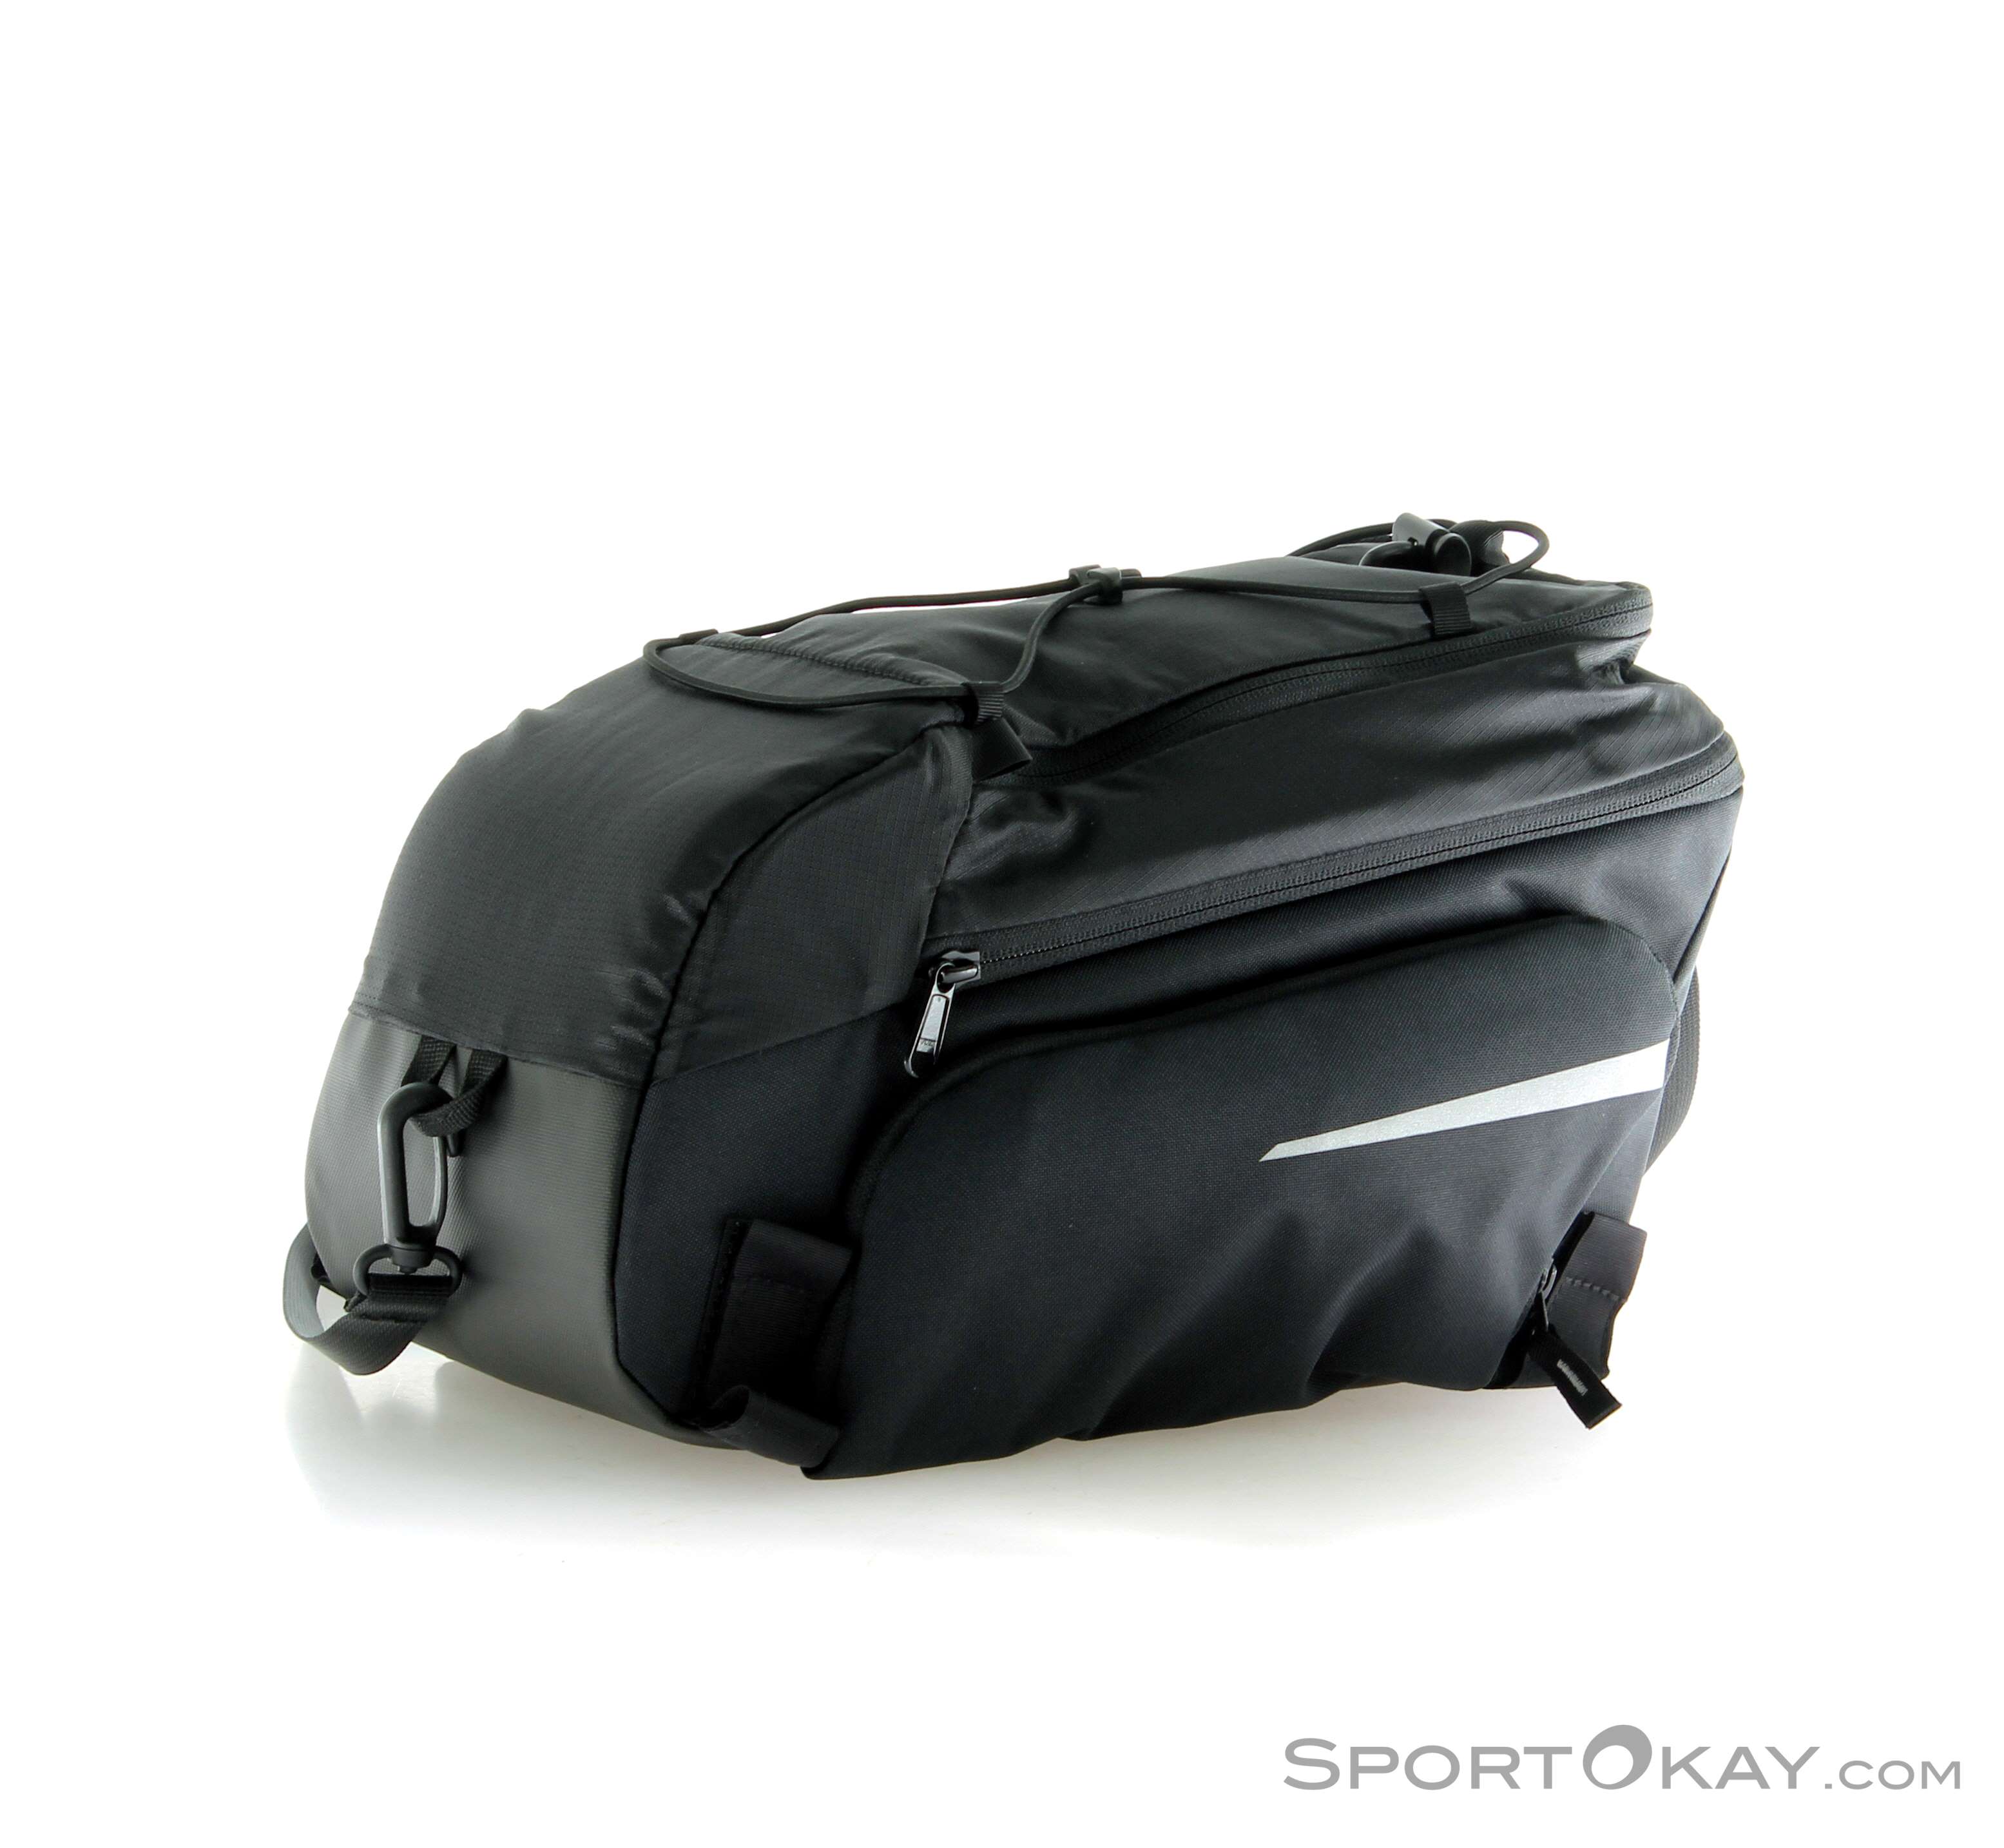 Vaude Silkroad Luggage Rack Bag - Bike Bag - Accessory - Bike - All